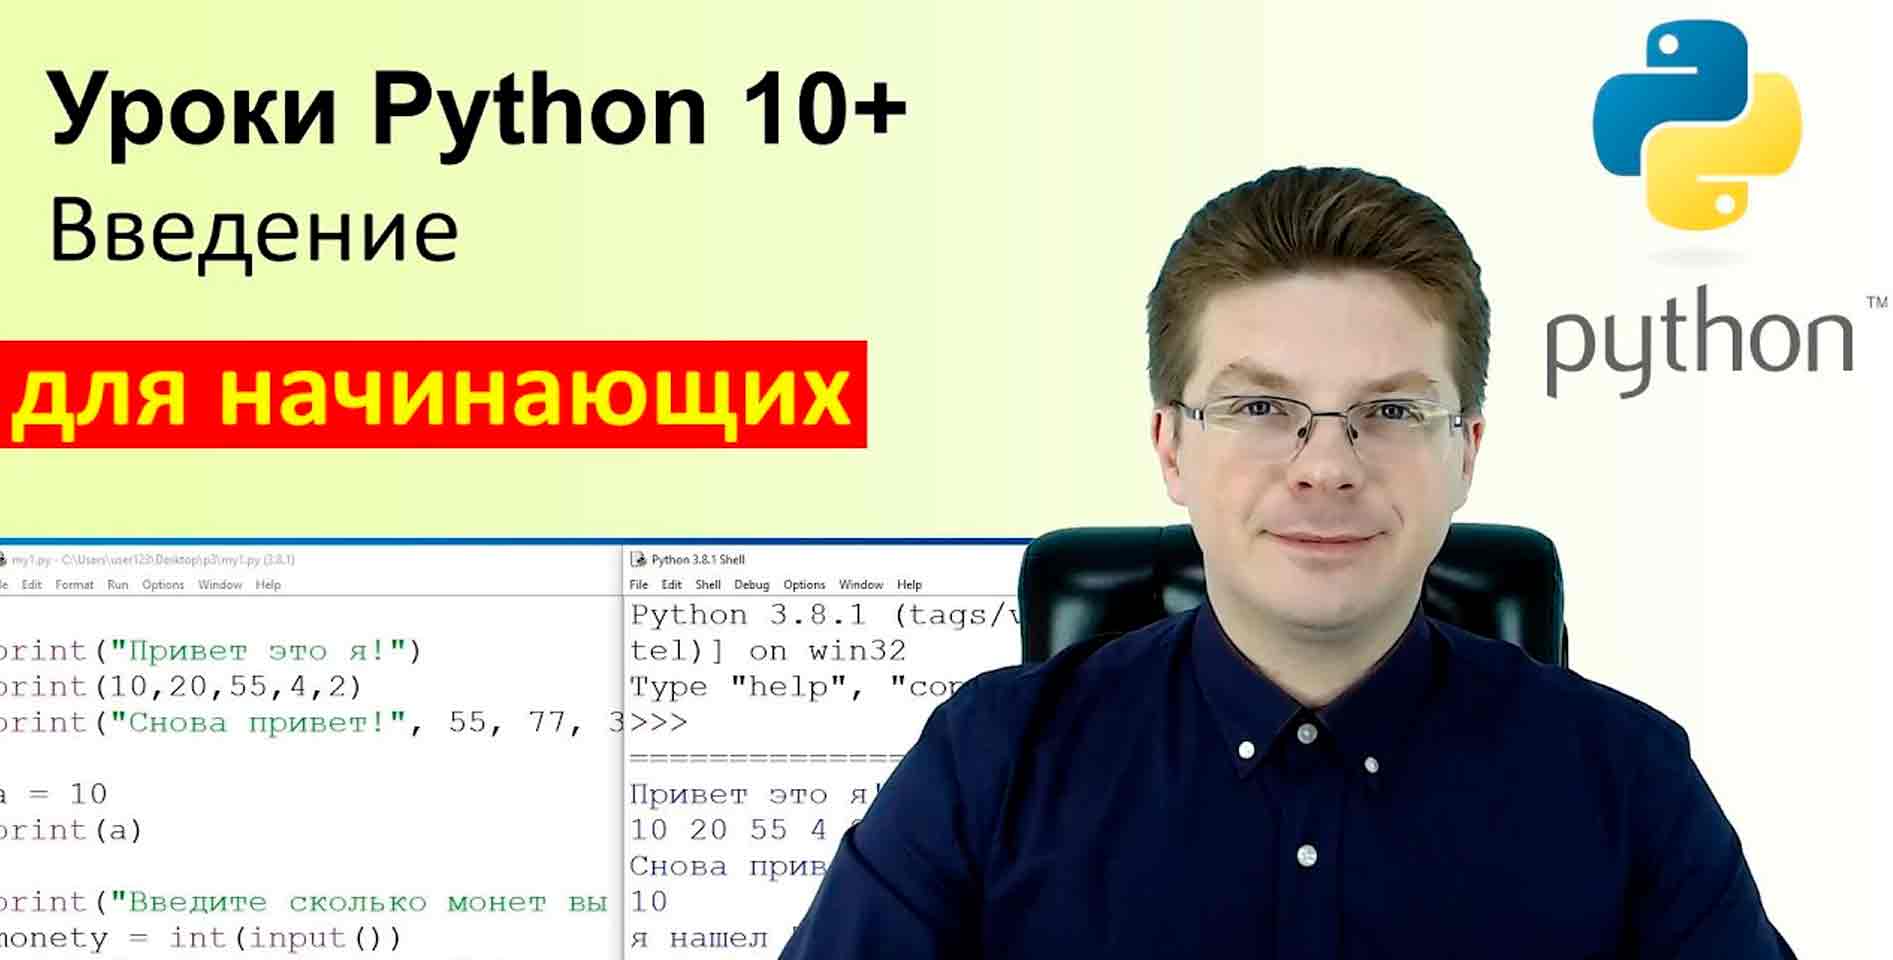 37) Олег Шпагин —Уроки по Python для детей 10+